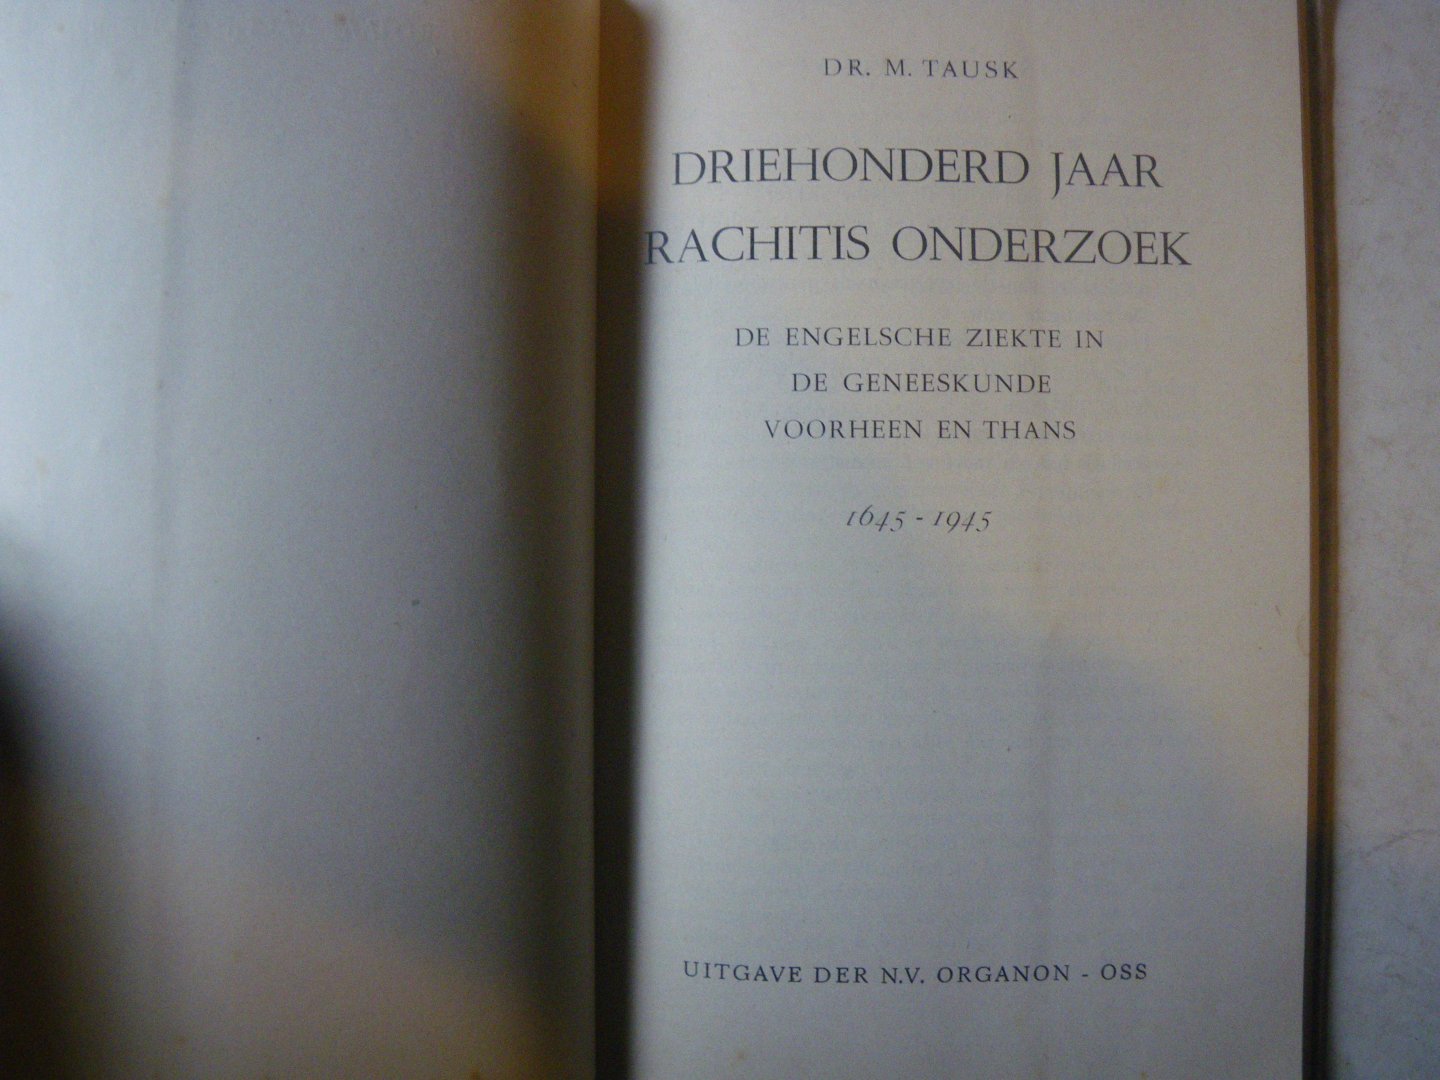 TAUSK, M. - Driehonderd jaar Rachitis onderzoek. De Engelsche ziekte in de geneeskunde voorheen en thans. 1645-1945